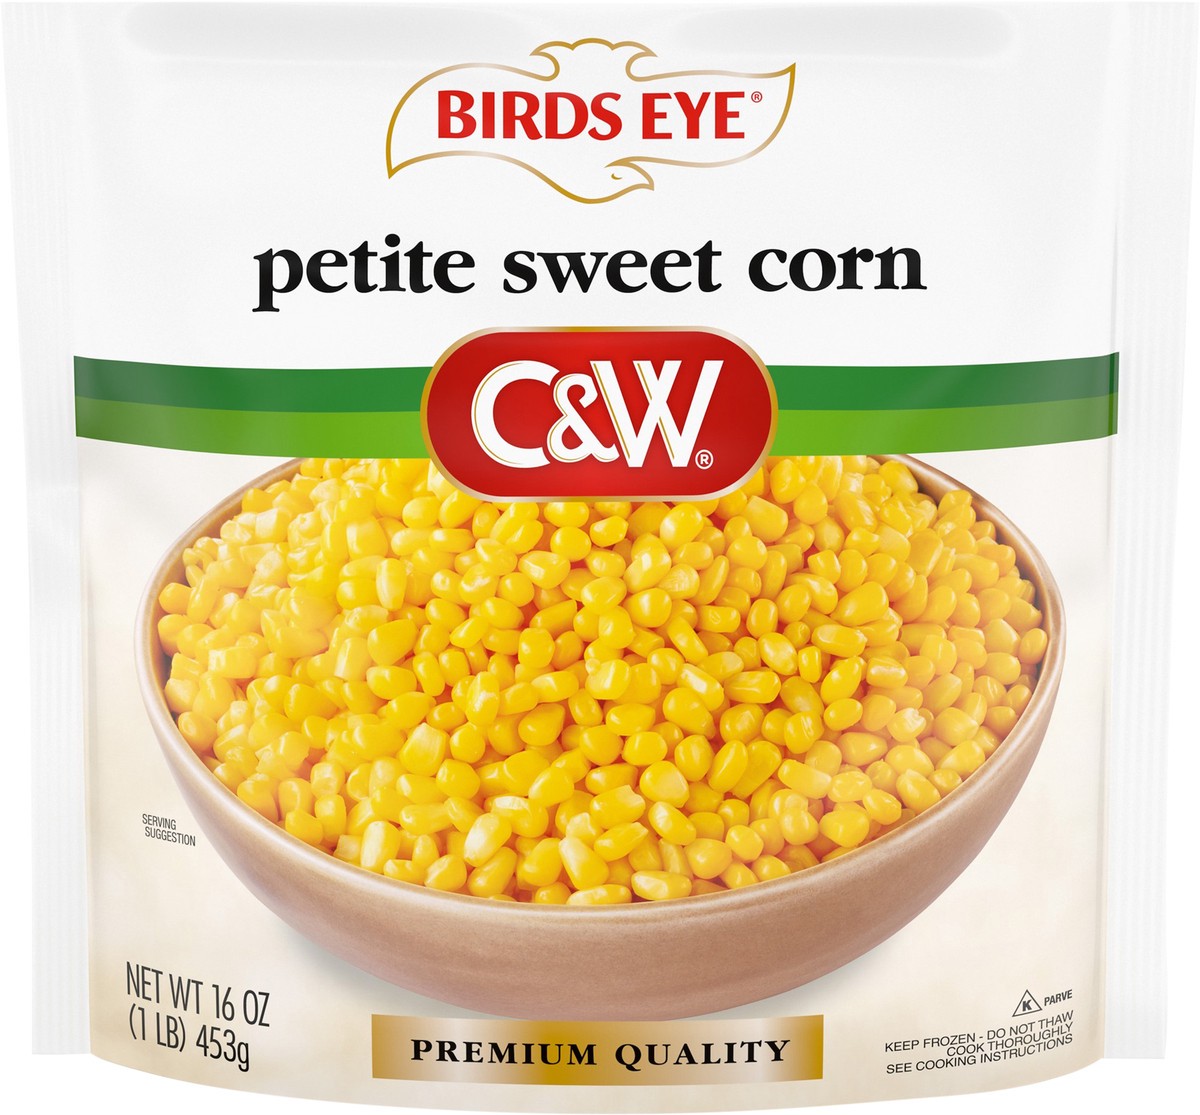 slide 6 of 8, Birds Eye C&W Petite Sweet Corn, 16 oz